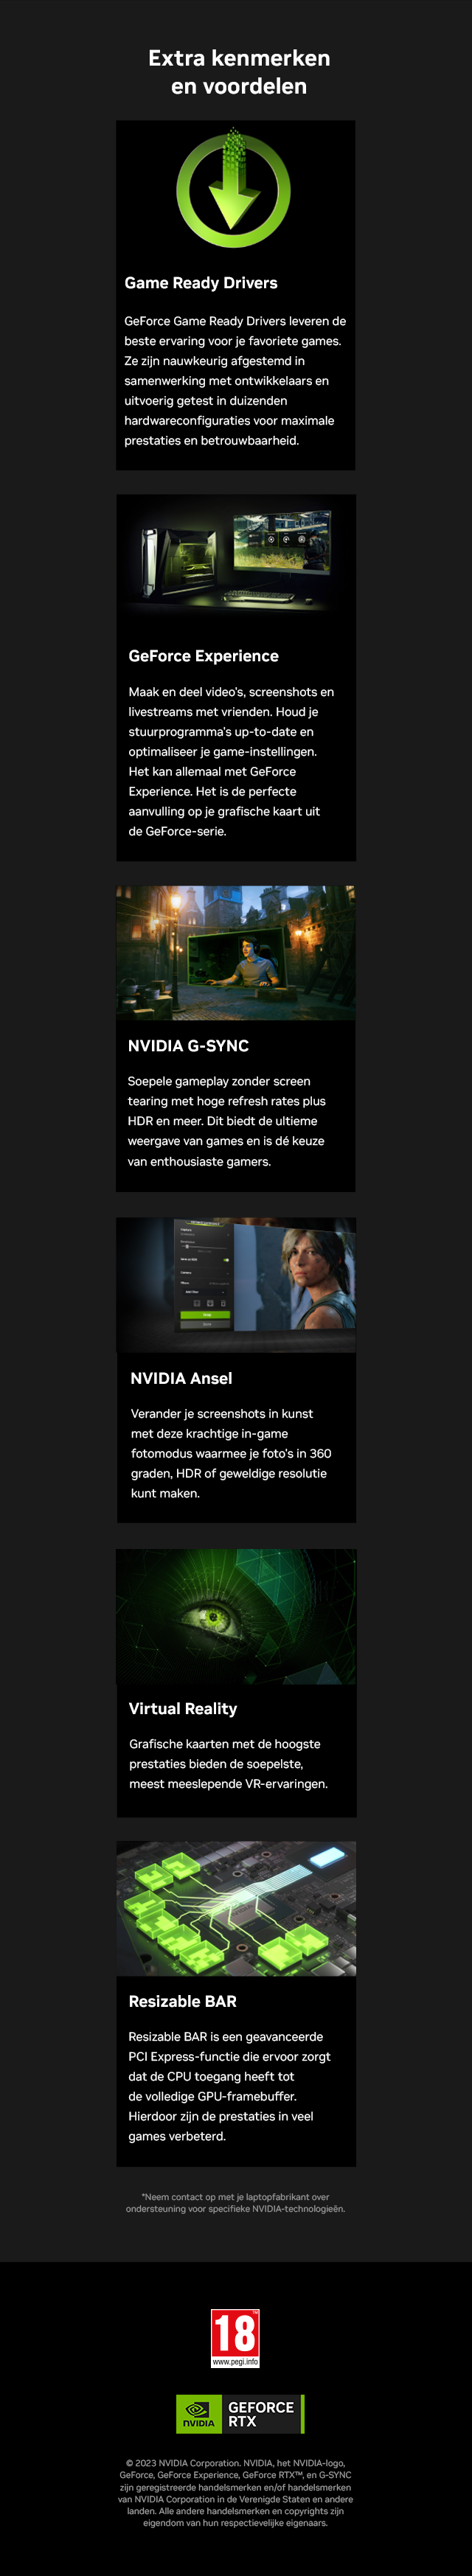 Extra kenmerken en voordelen van NVIDIA en GeForce